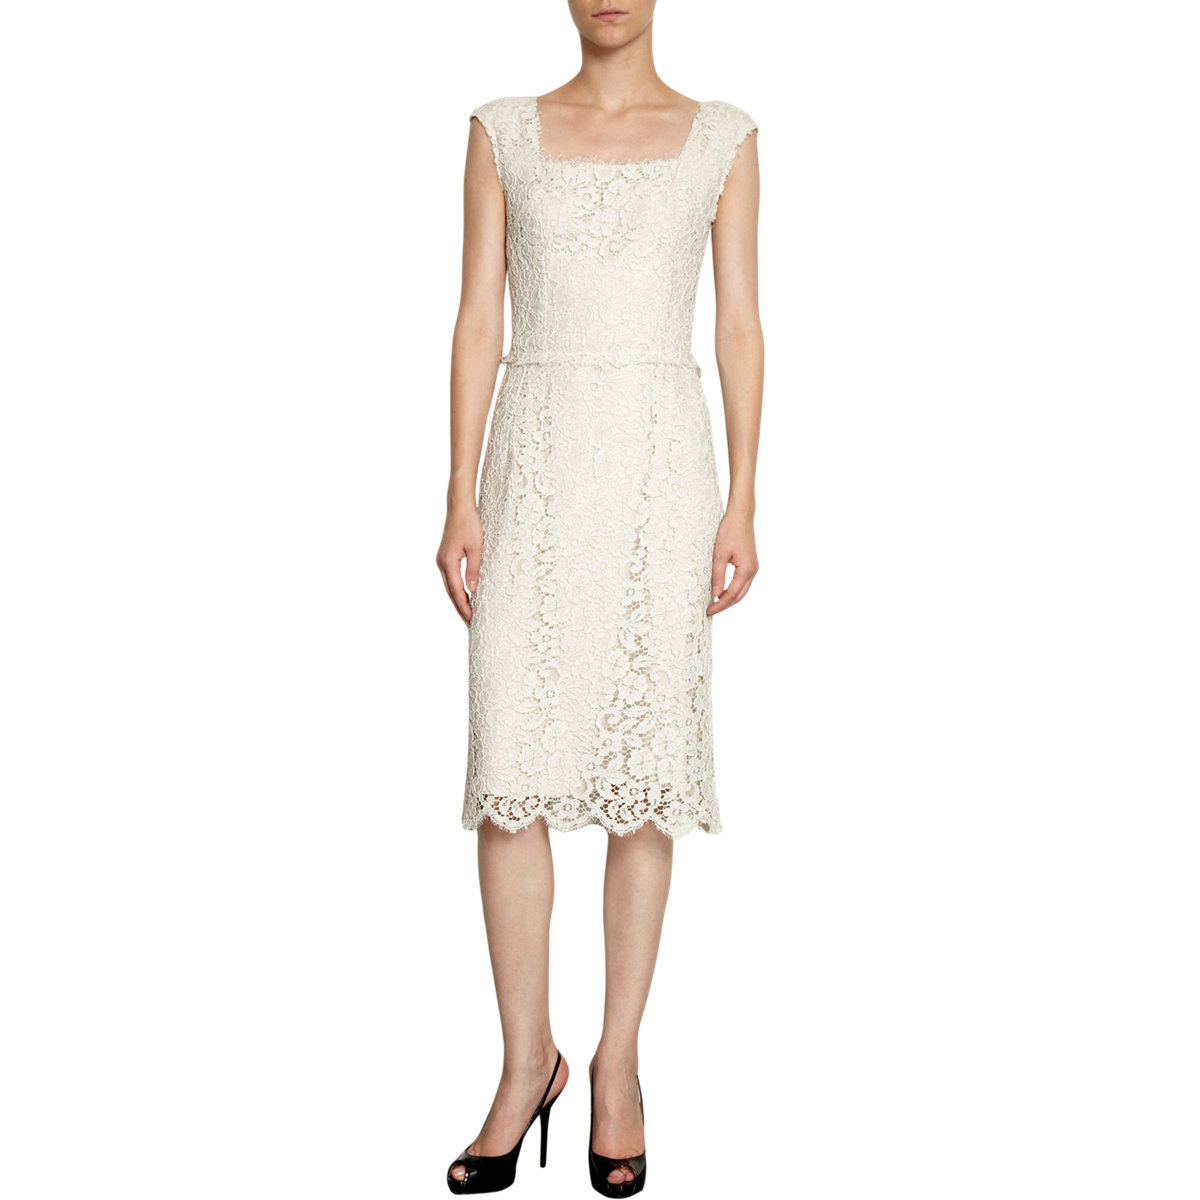 White lace sheath dress